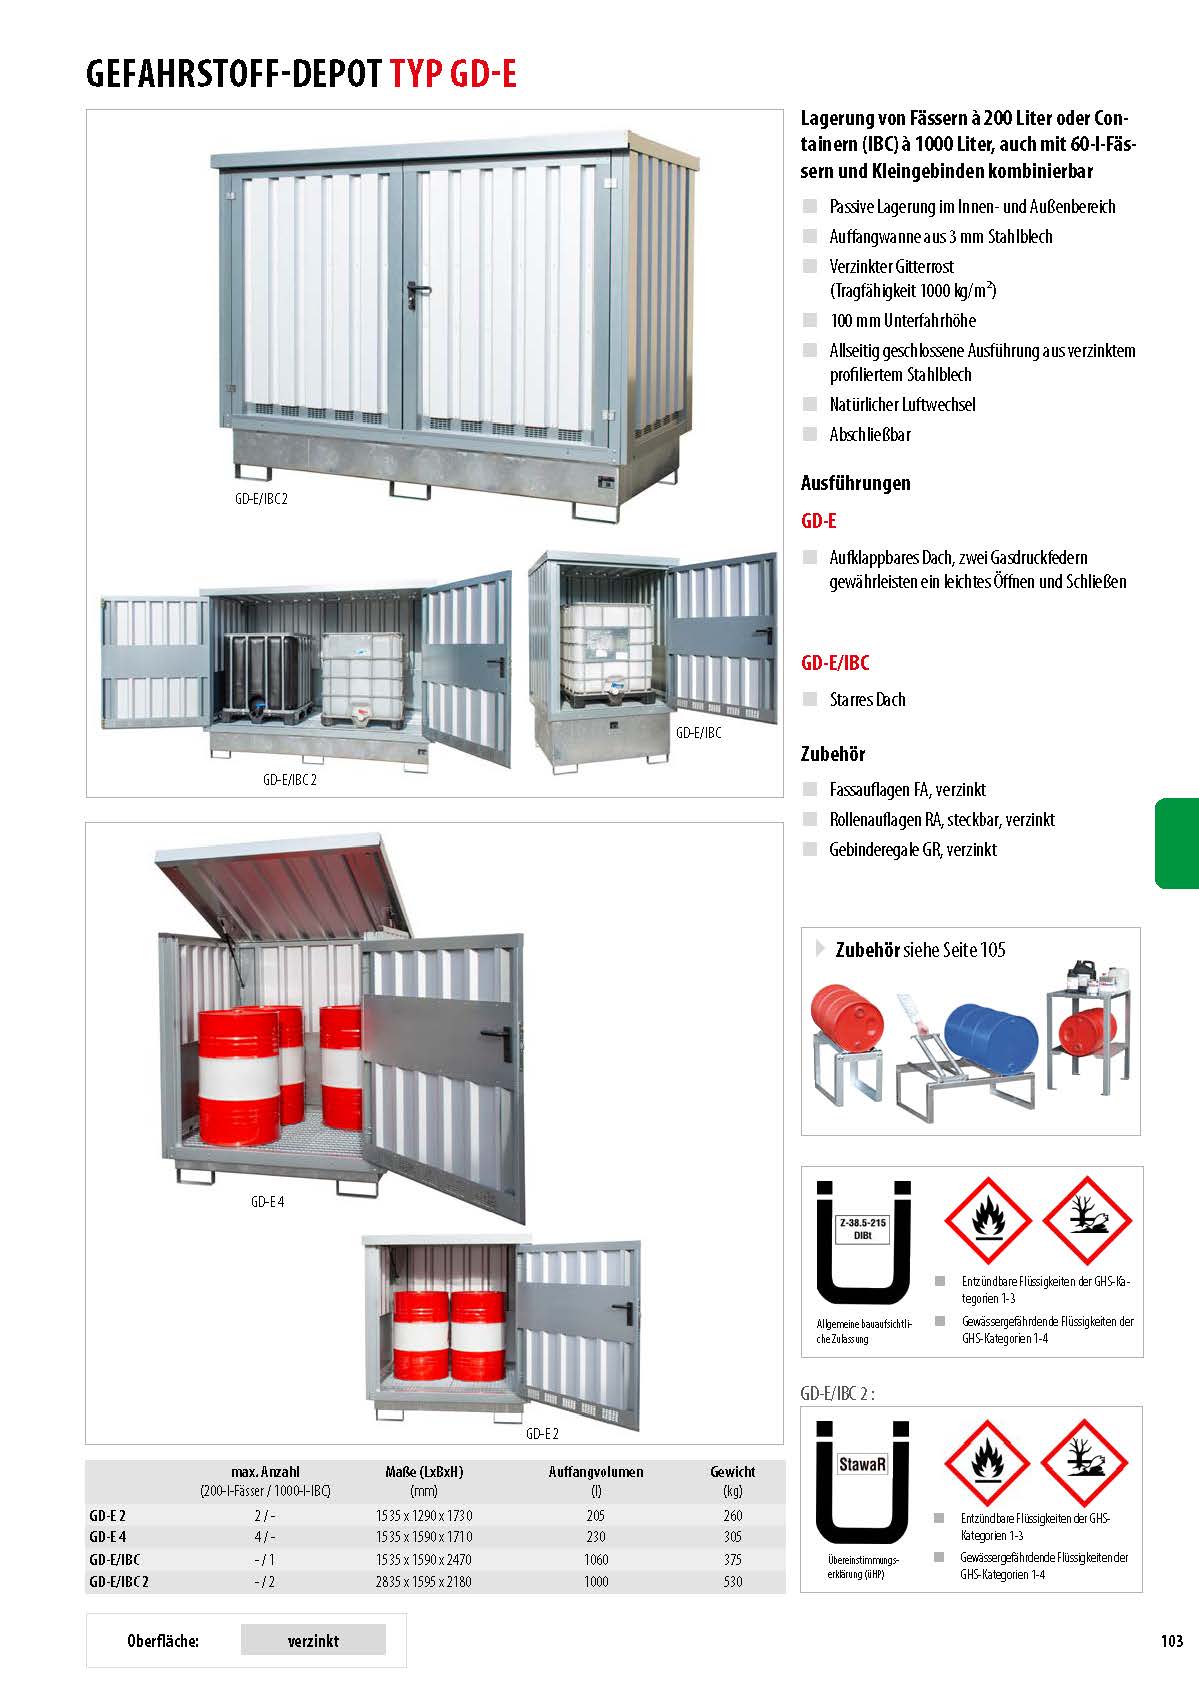 Gefahrstoff-Depot mit Auffangwannen für 2 IBC 